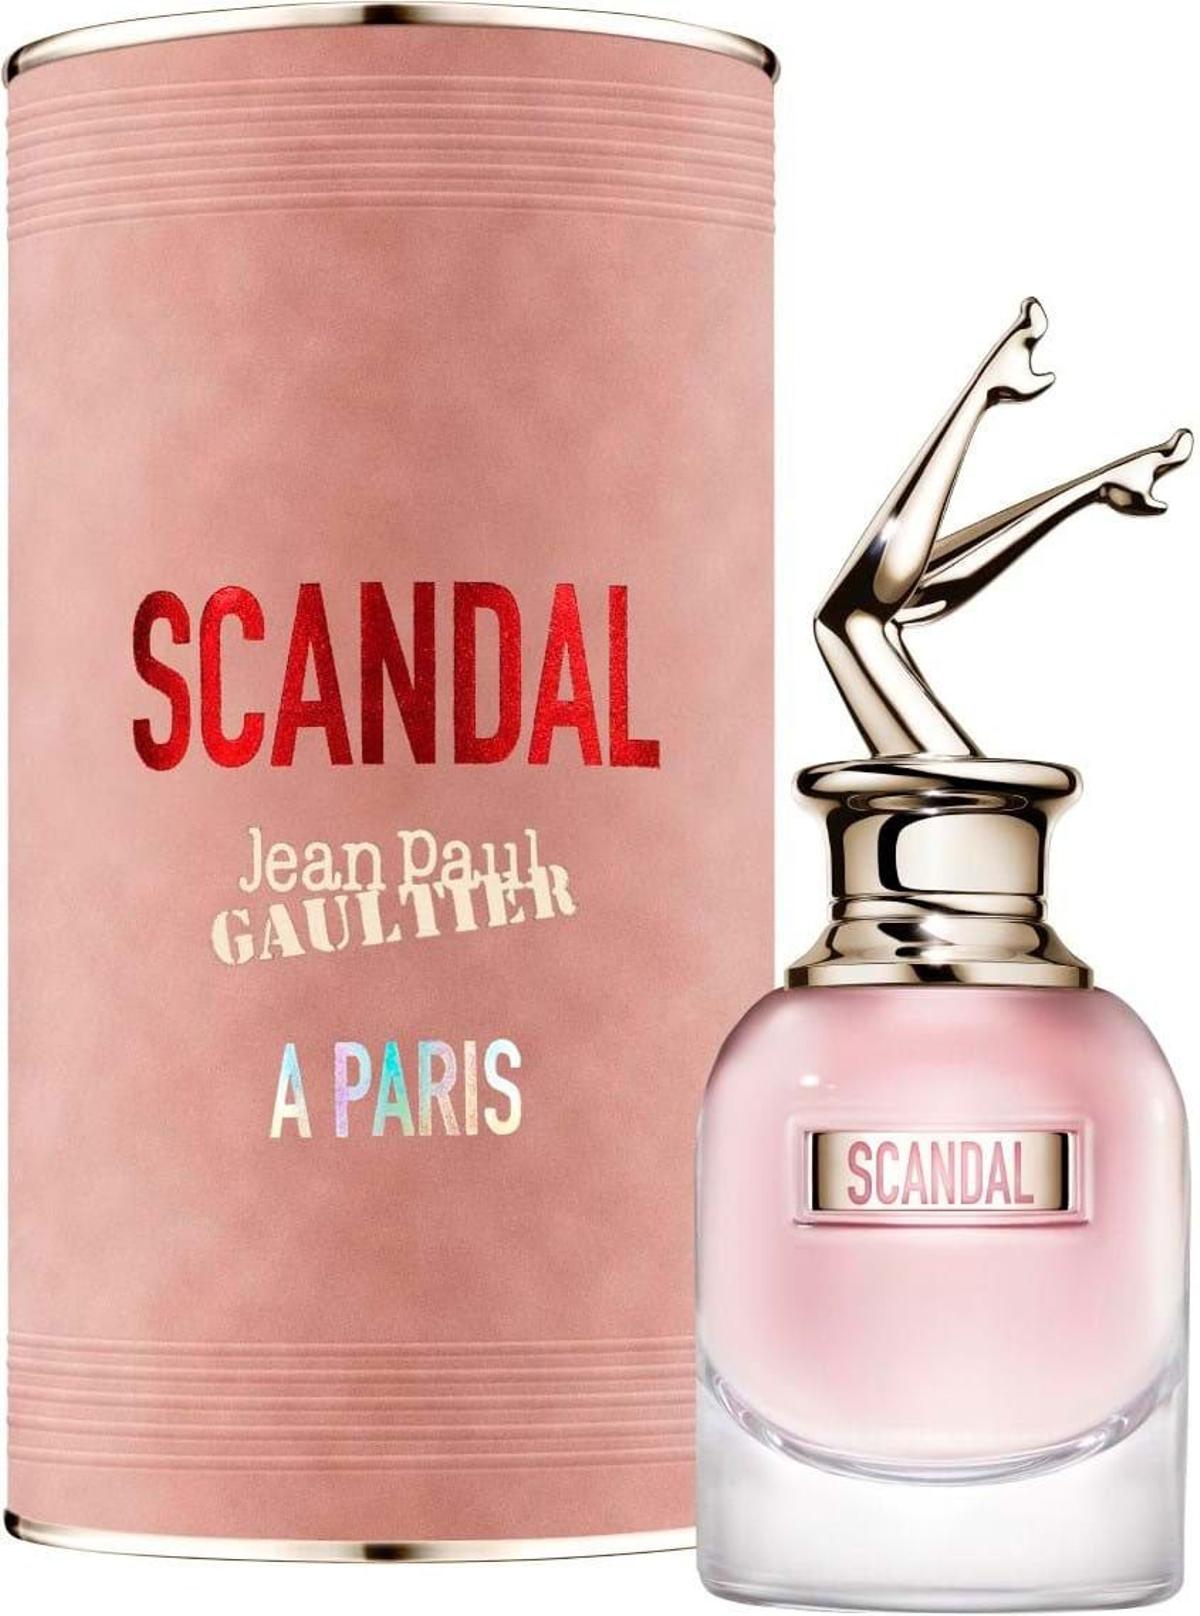 Irina Shayk luce unas piernas de escándalo para presentar el último perfume  de Jean Paul Gaultier - Stilo